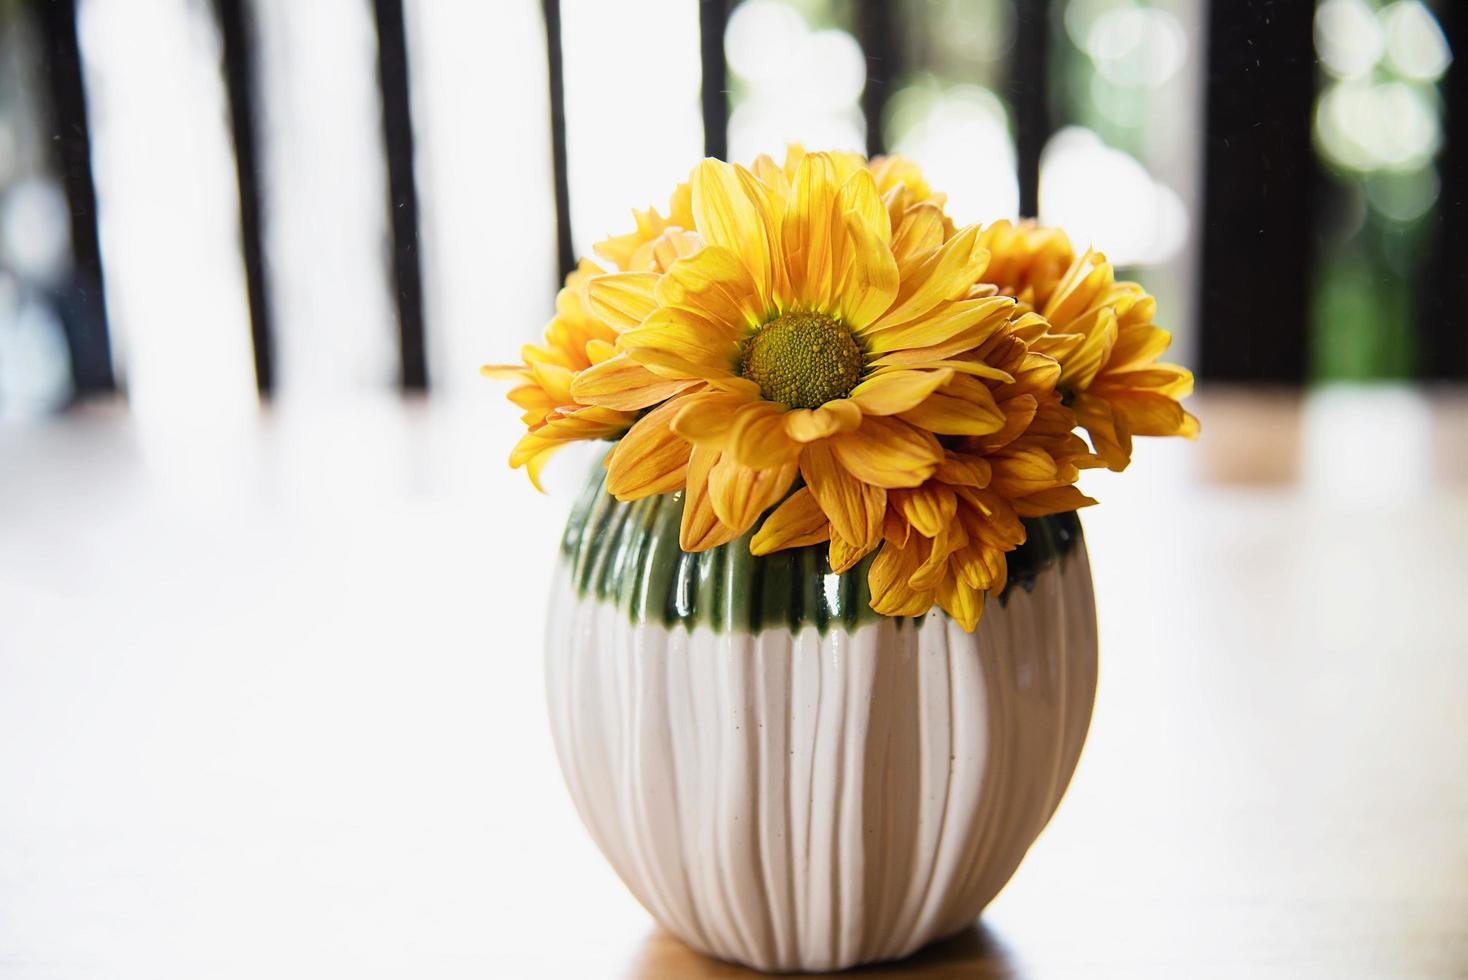 frische bunte kleine sonnenblume im keramiktopf - gelbe blumendekoration für den hintergrund foto